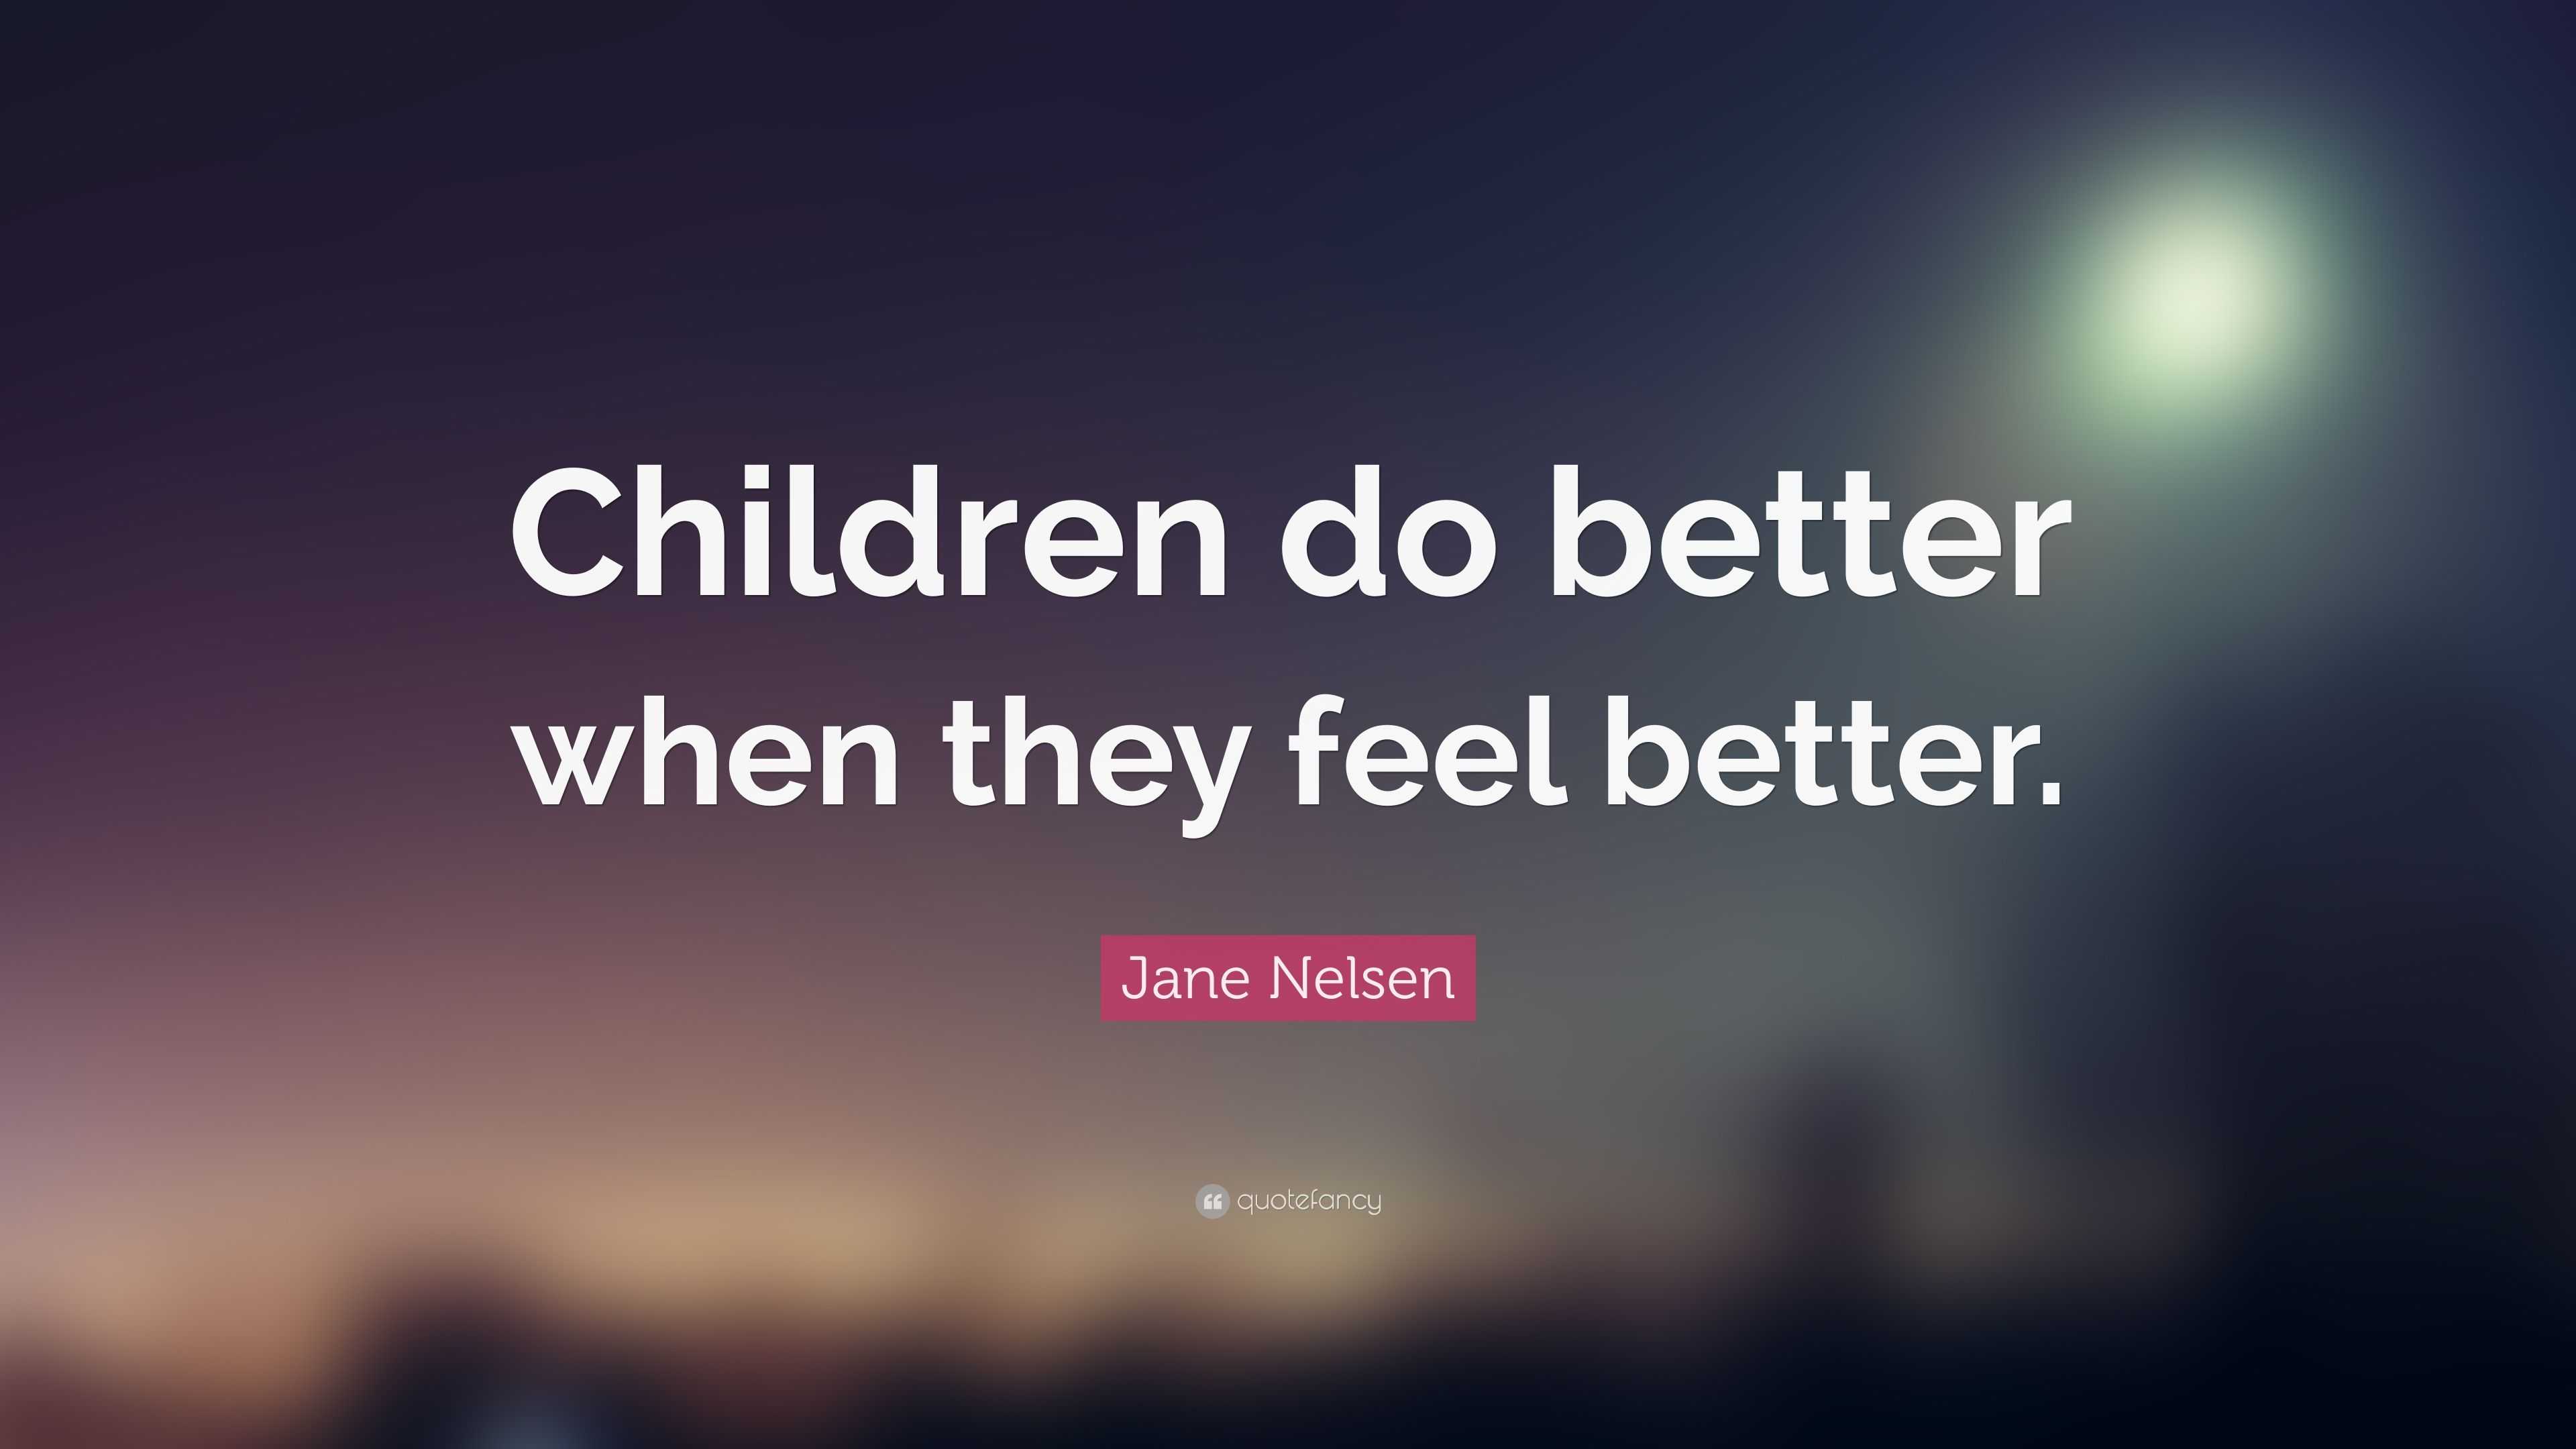 Jane Nelsen Quote: “Children do better when they feel better.”